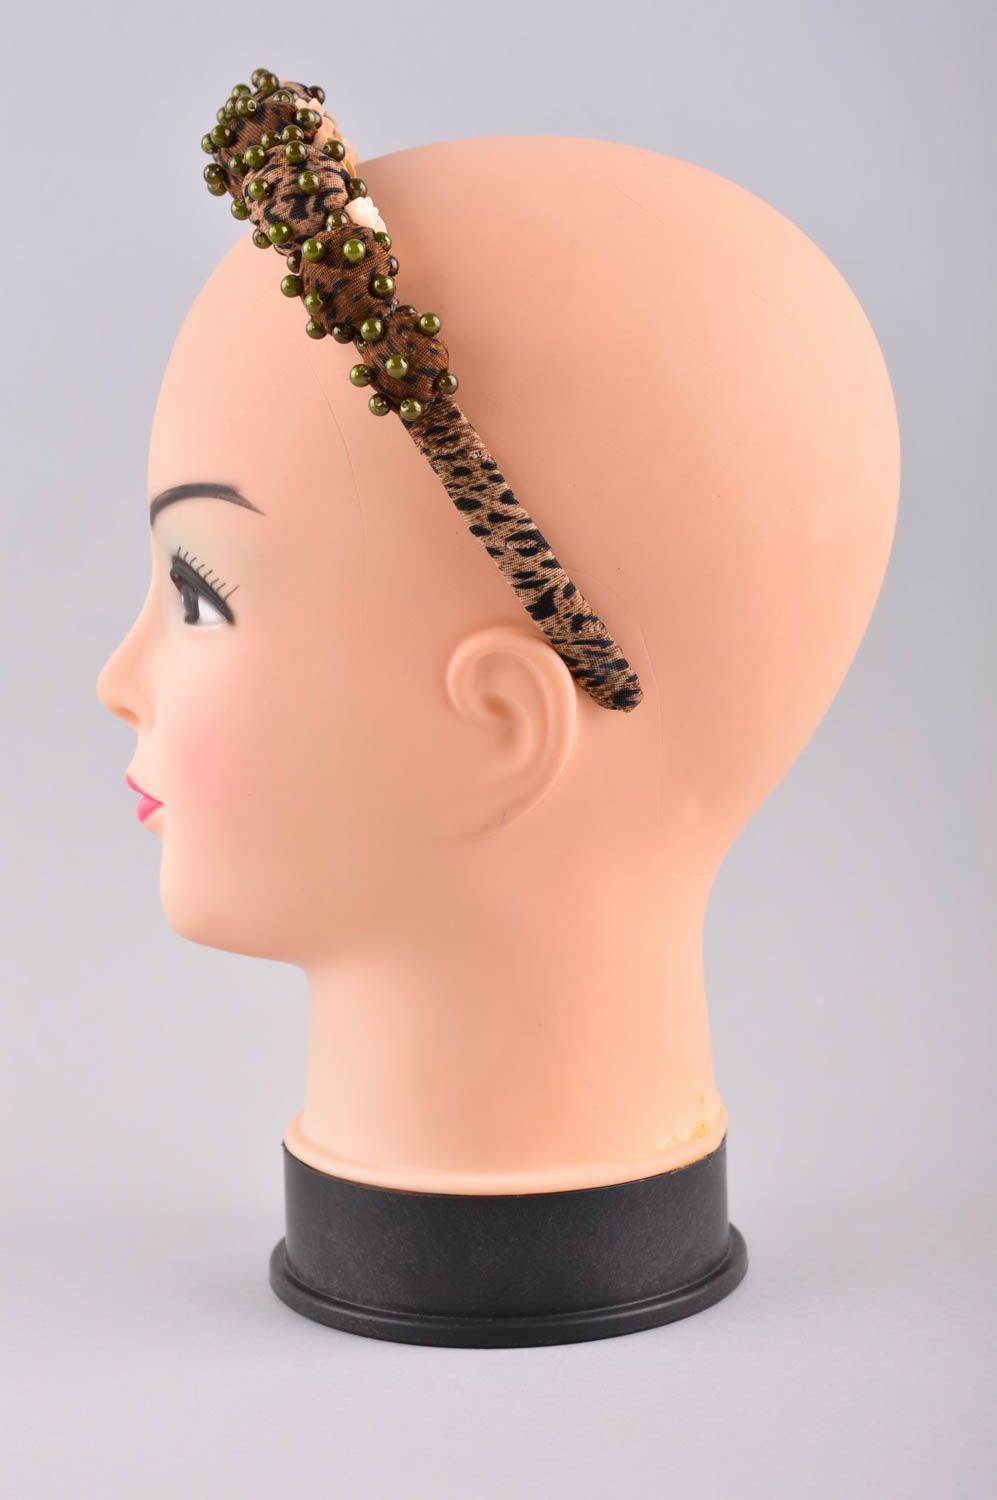 Обруч на голову ручной работы аксессуар для волос дизайнерское украшение фото 3